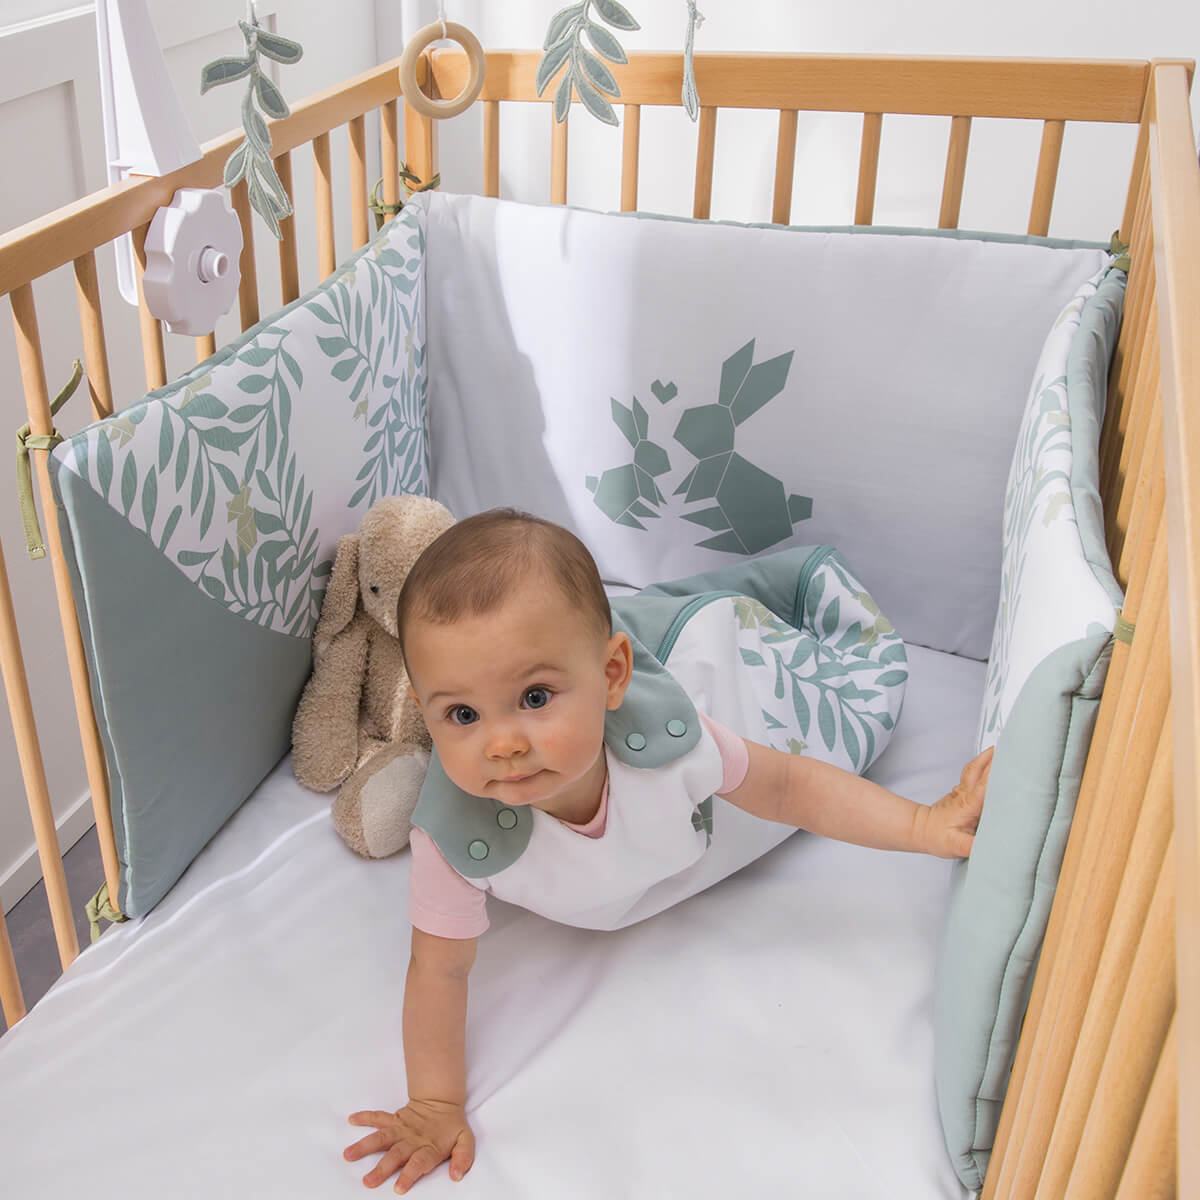 Tours de lit en coton pour les lits de bébés